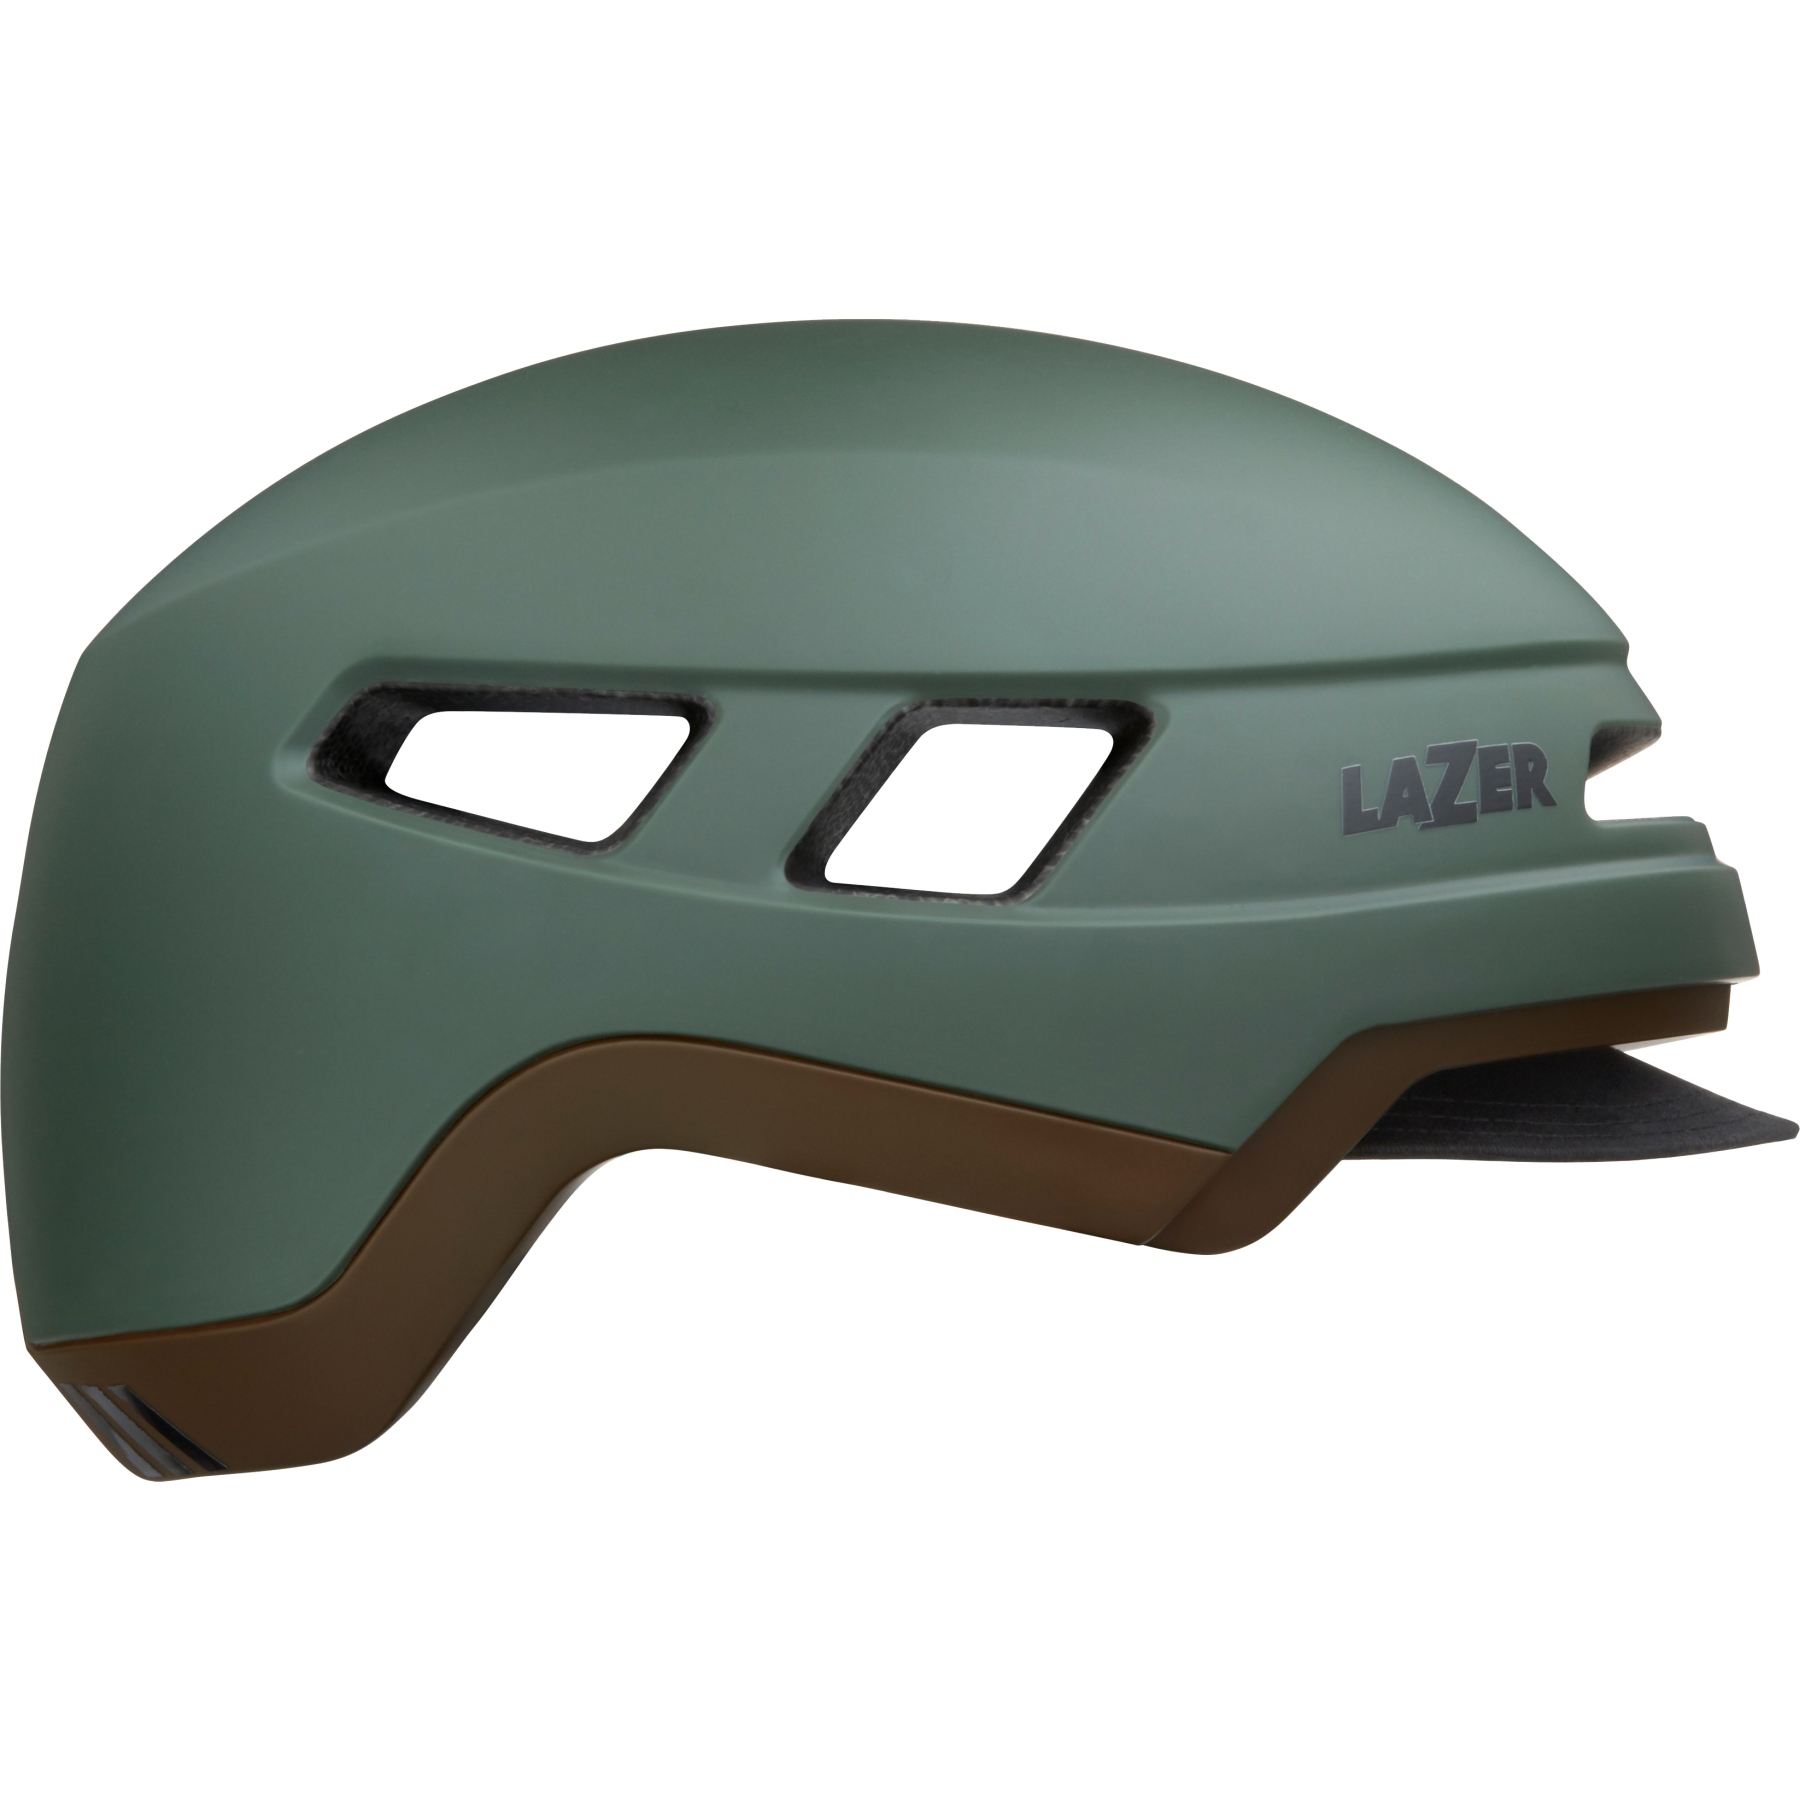 Produktbild von Lazer Cruizer Helm - matte dark green